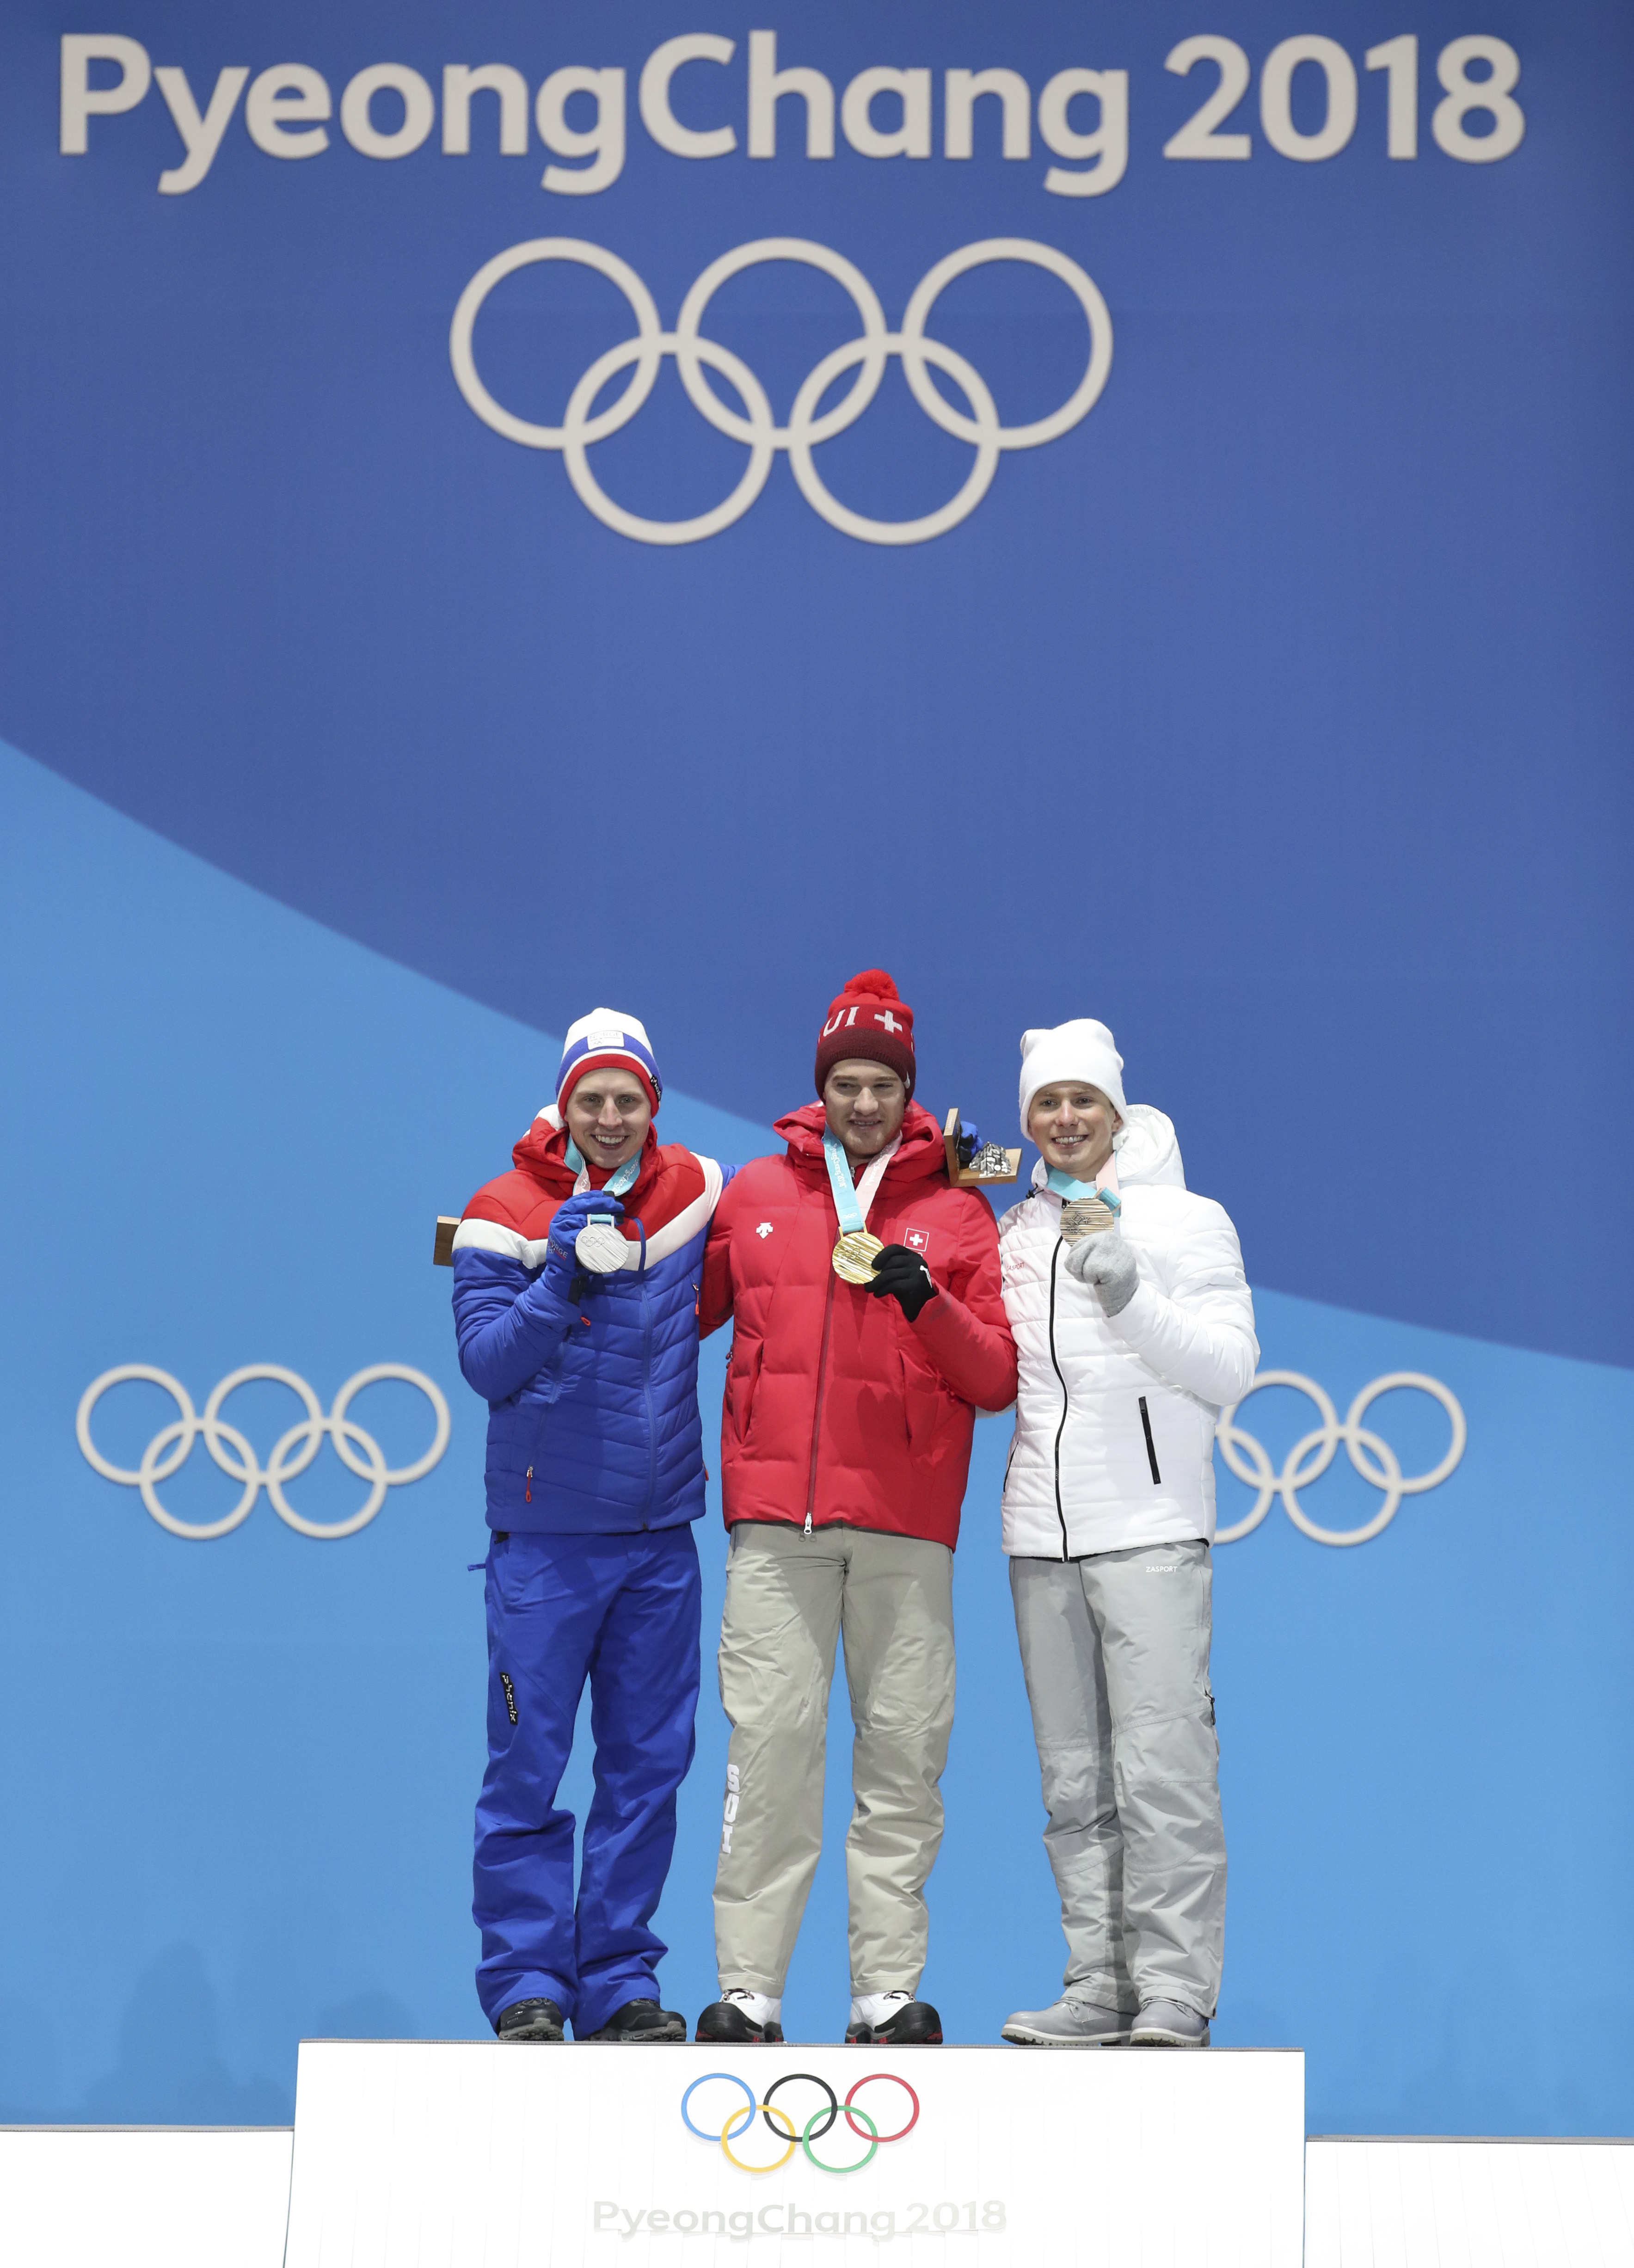 2022冬奥会领奖台图片图片